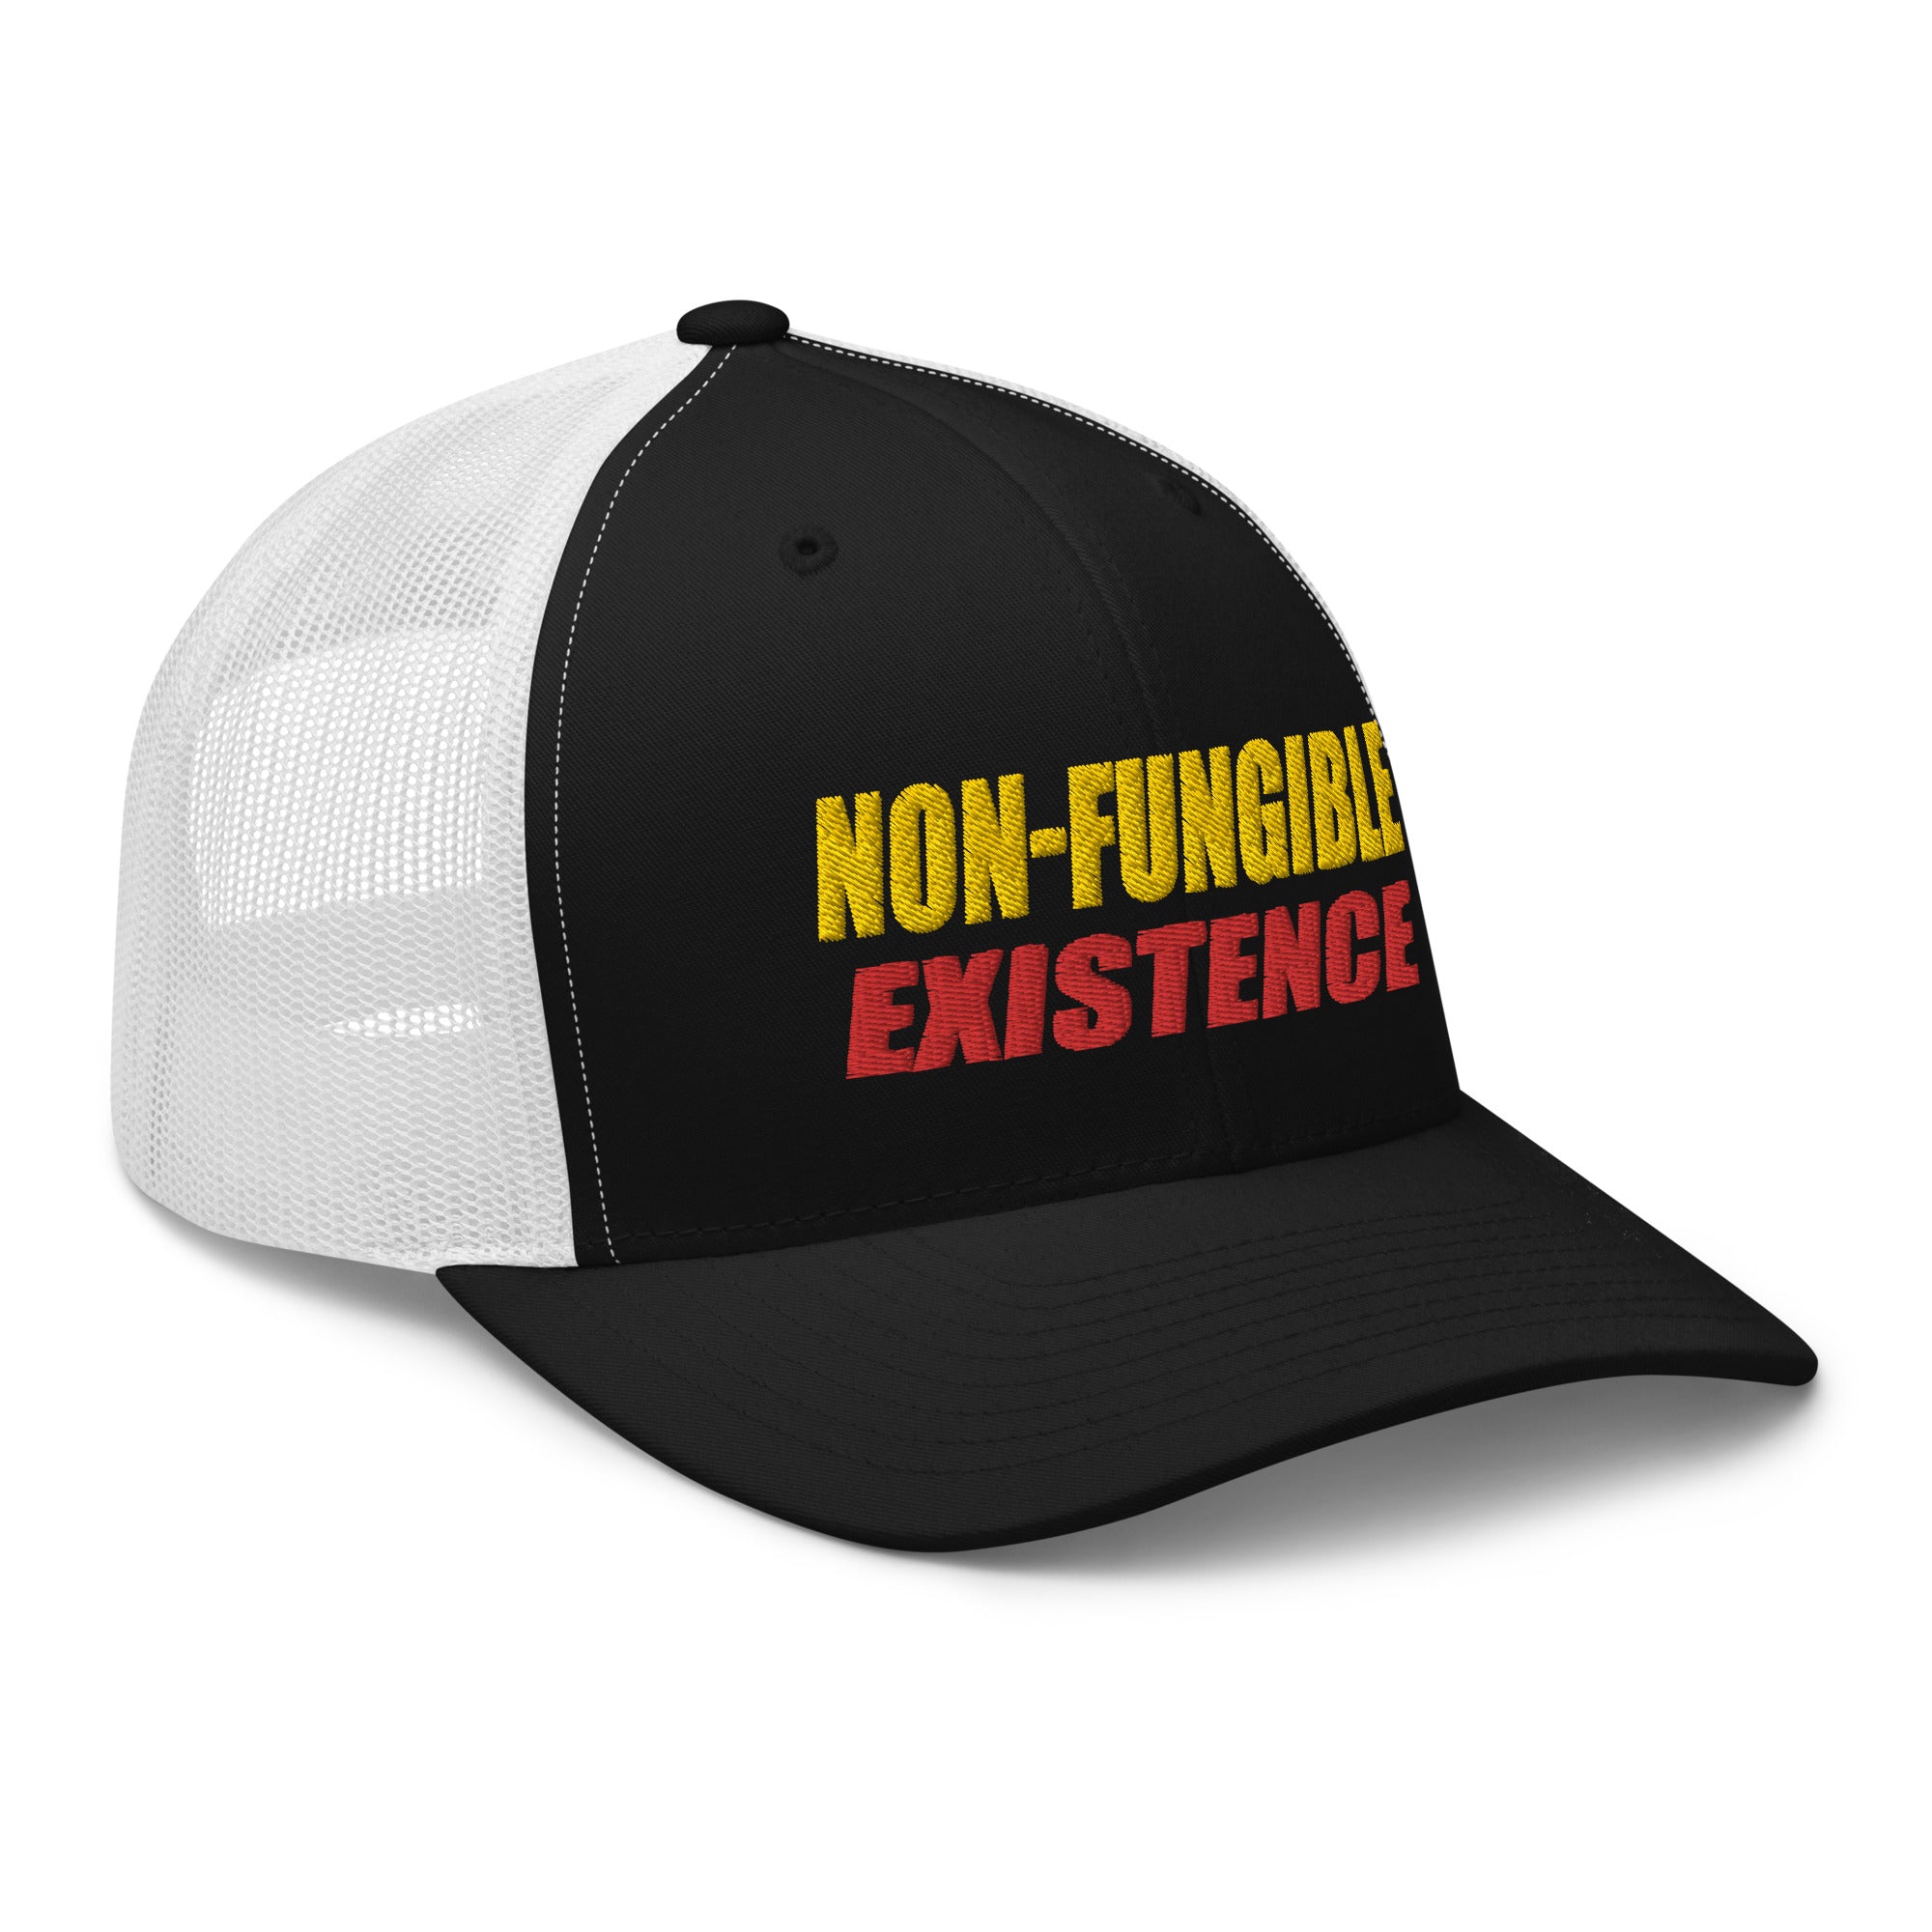 NFT Non-Fungible Existence Crypto Bitcoin Trucker Cap Snapback Hat